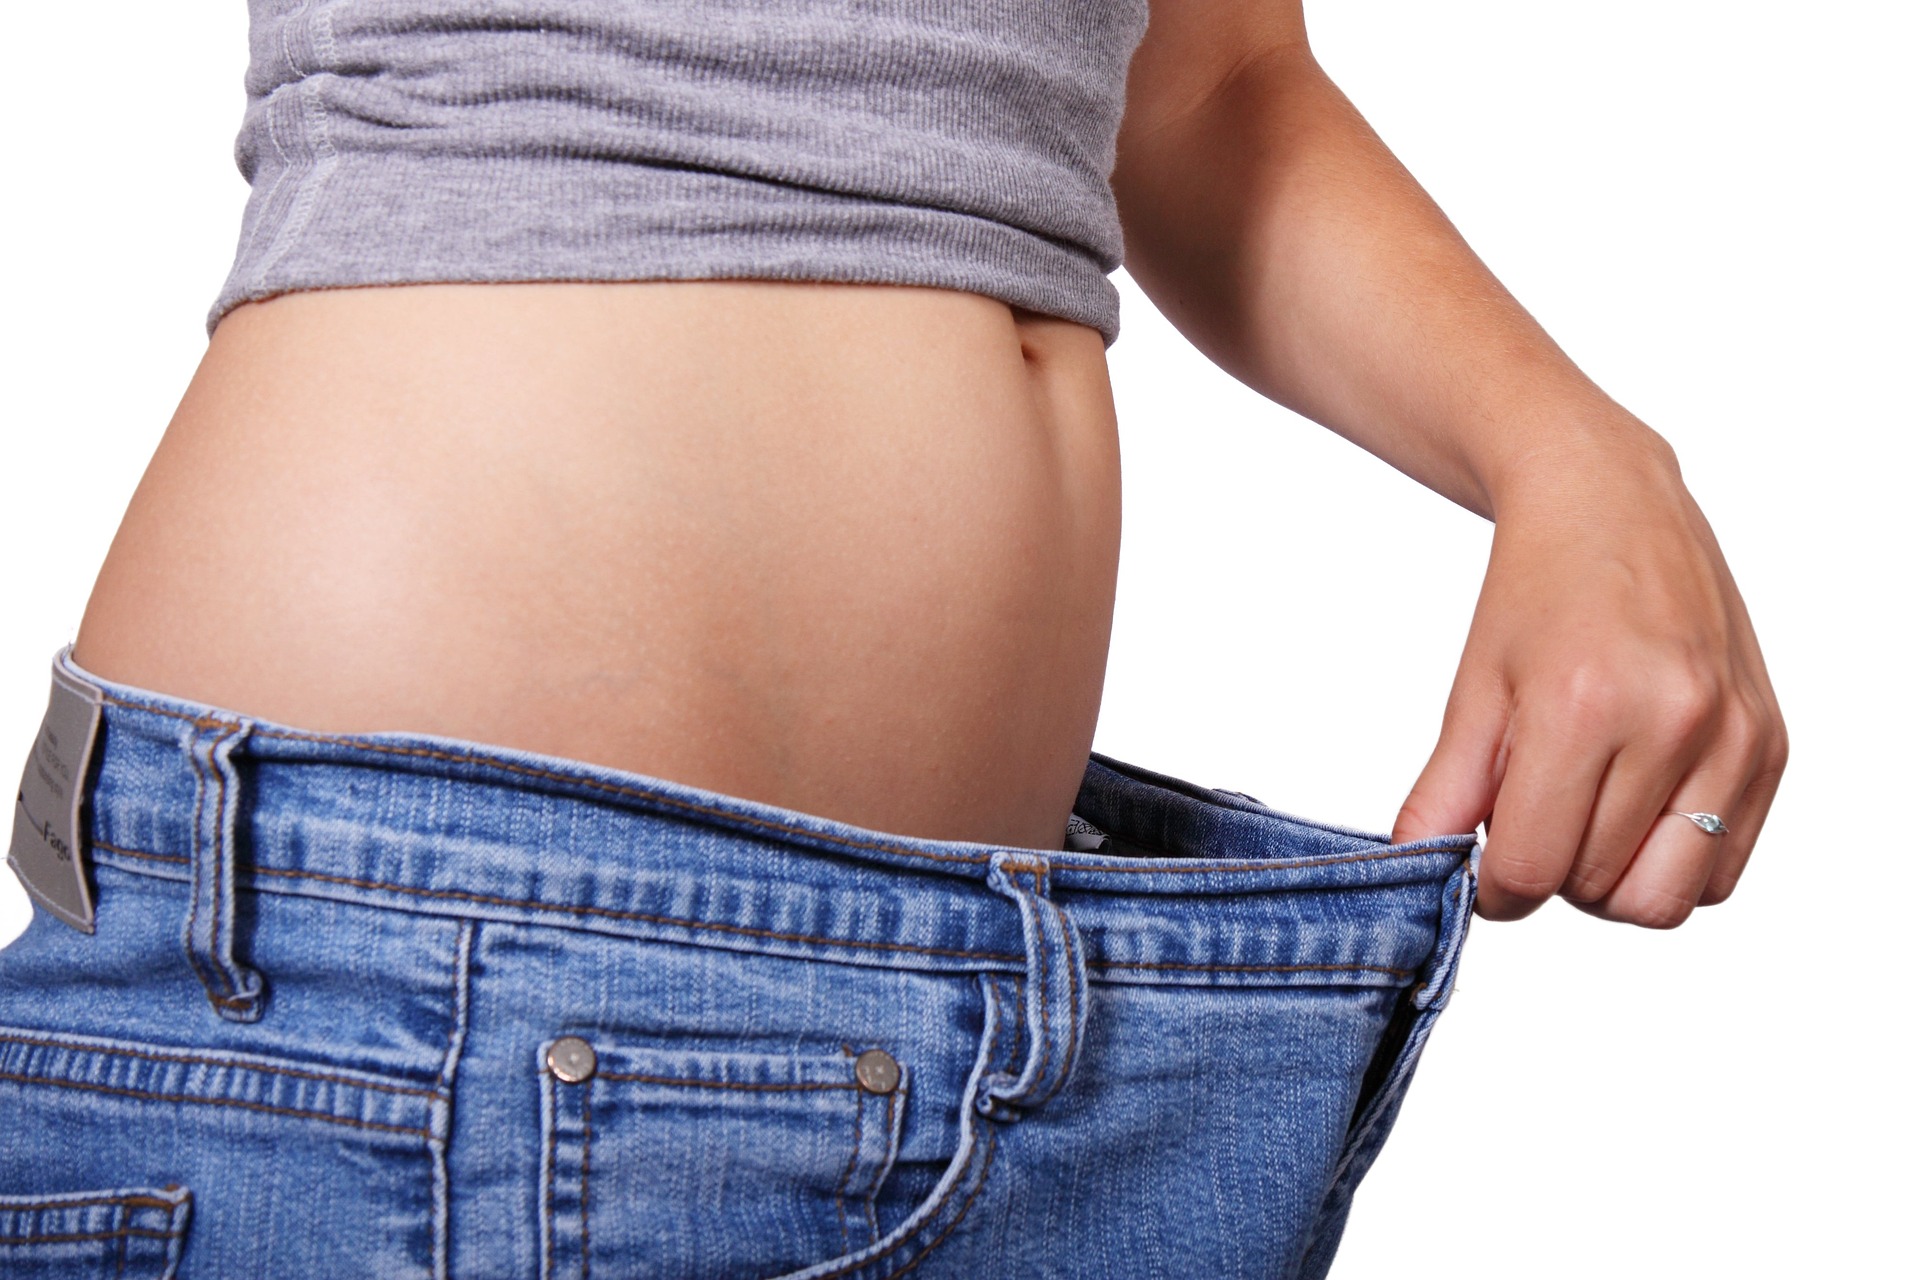 Come perdere peso a settembre: consigli e rimedi naturali